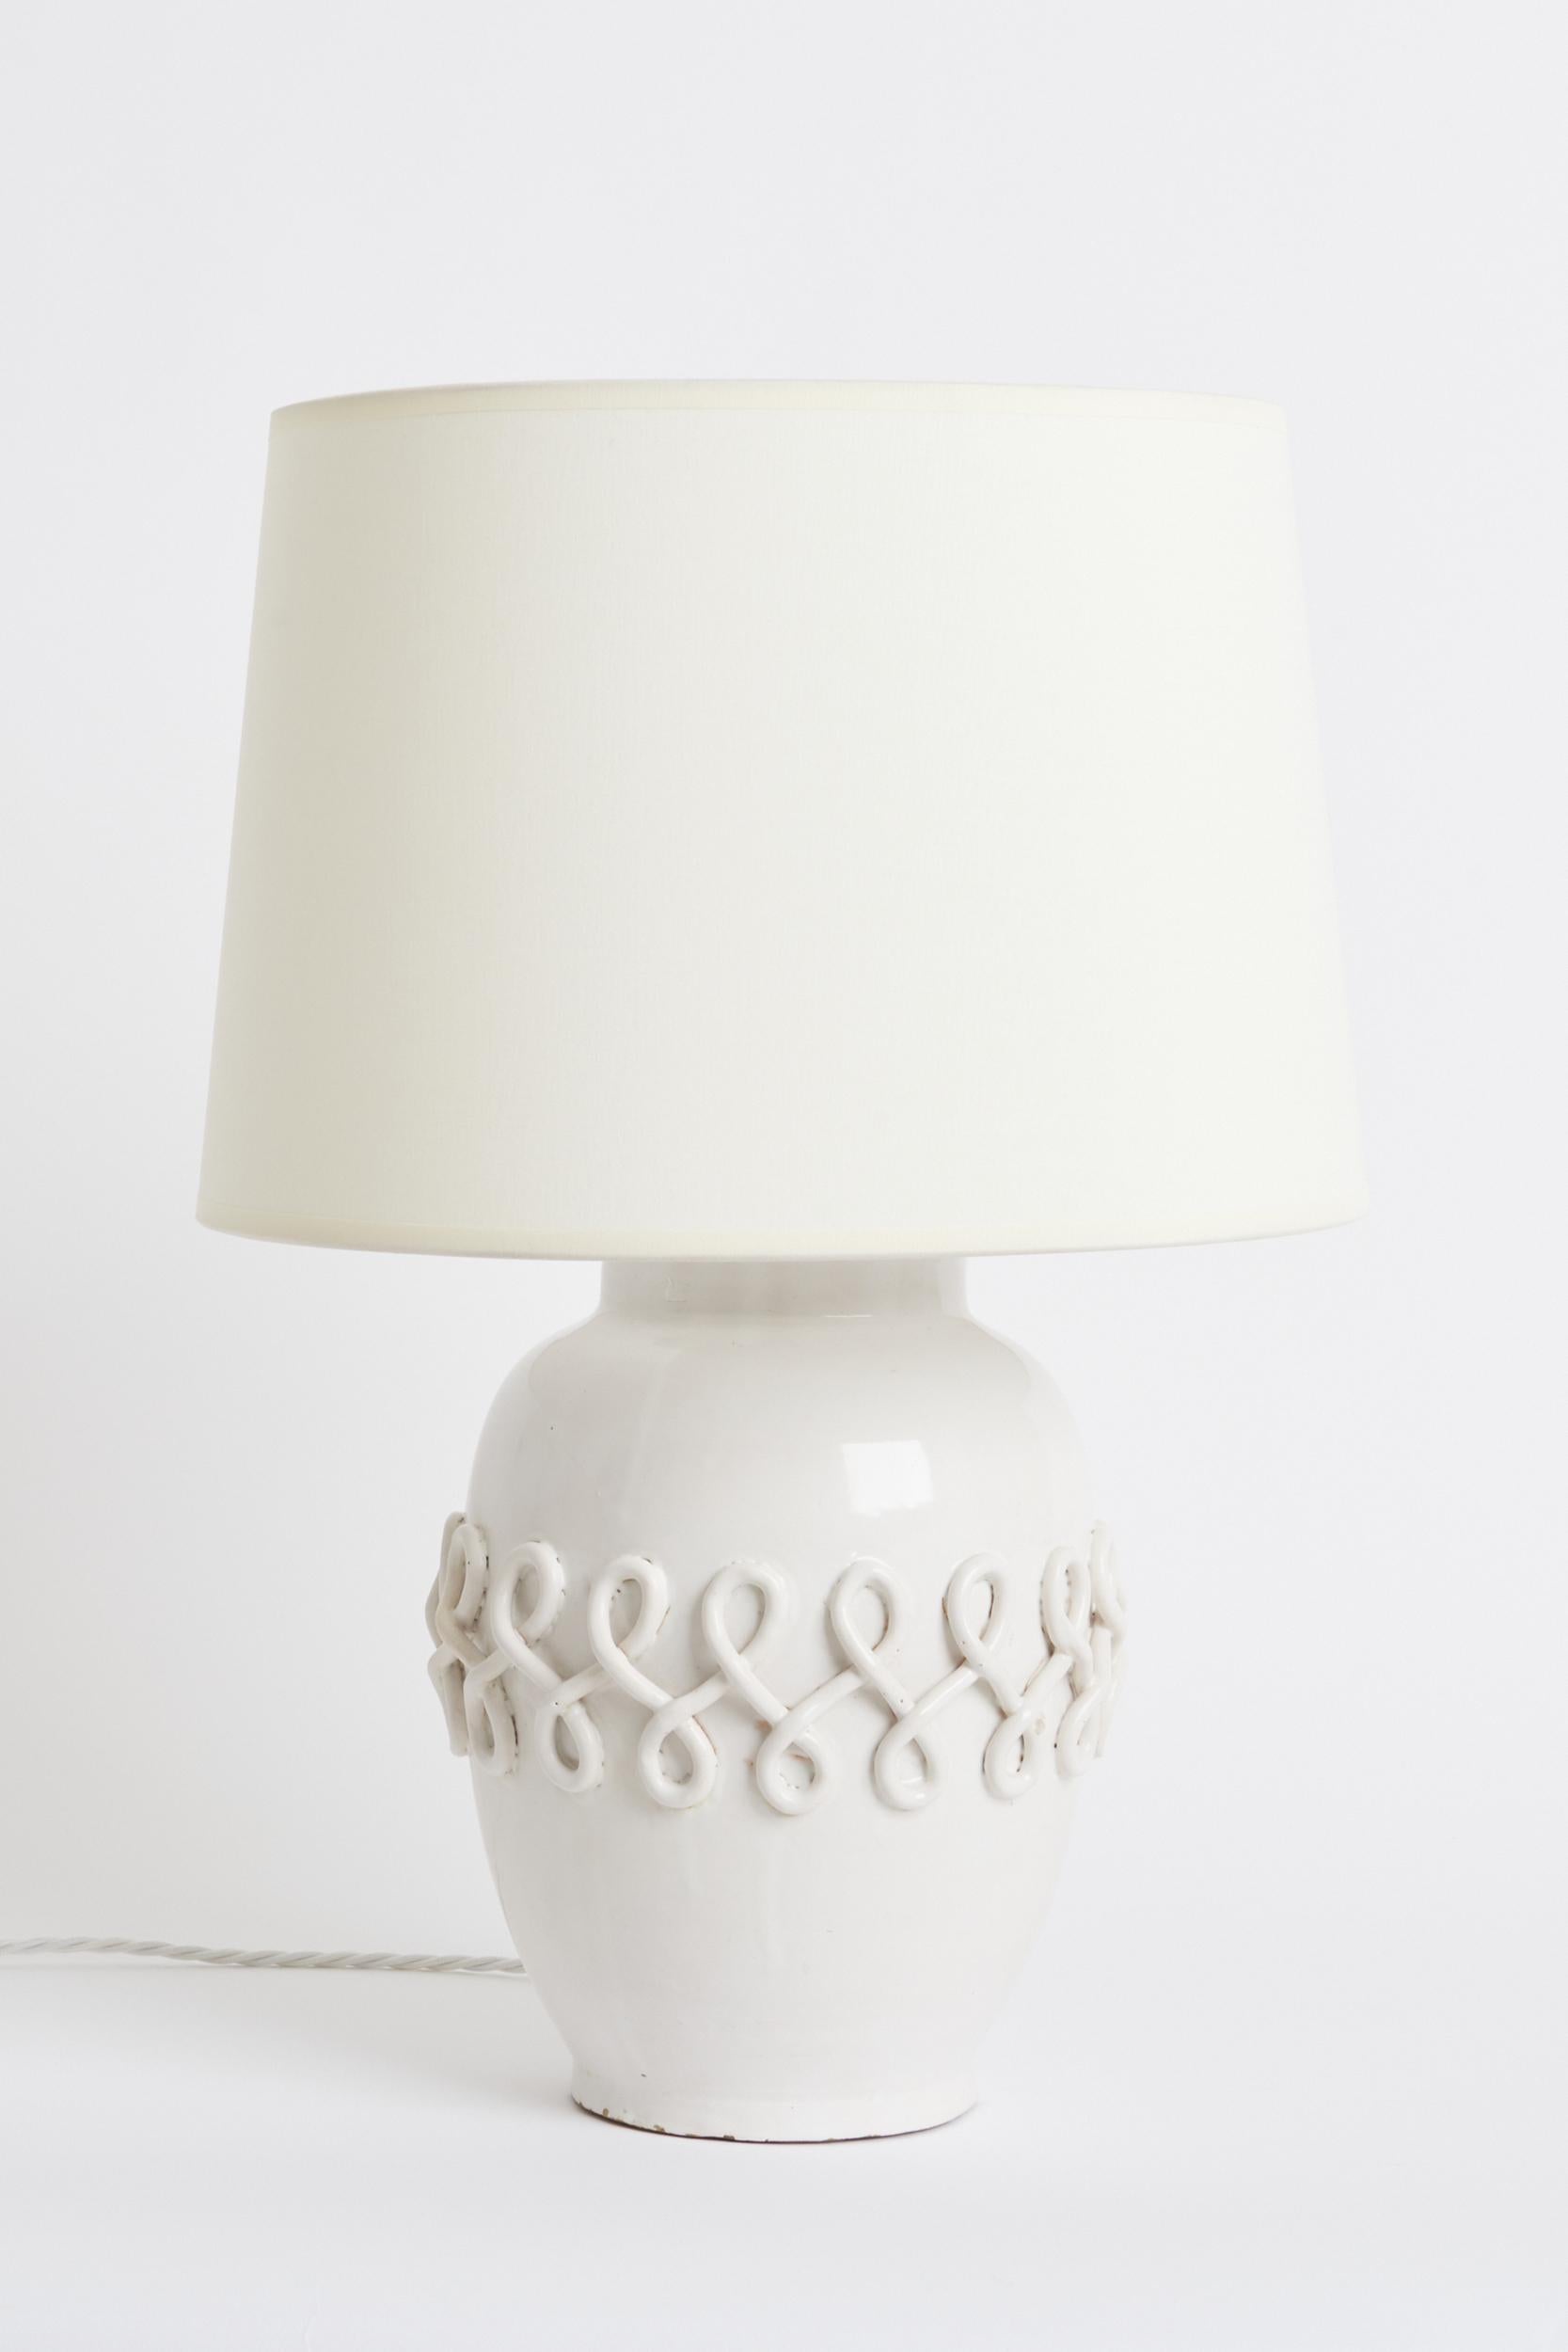 Lampe de table Art déco en céramique blanche
France, Circa 1950
Avec l'abat-jour : 52,5 cm de haut par 35,5 cm de diamètre
Base de la lampe uniquement : 35 cm de haut par 20 cm de diamètre